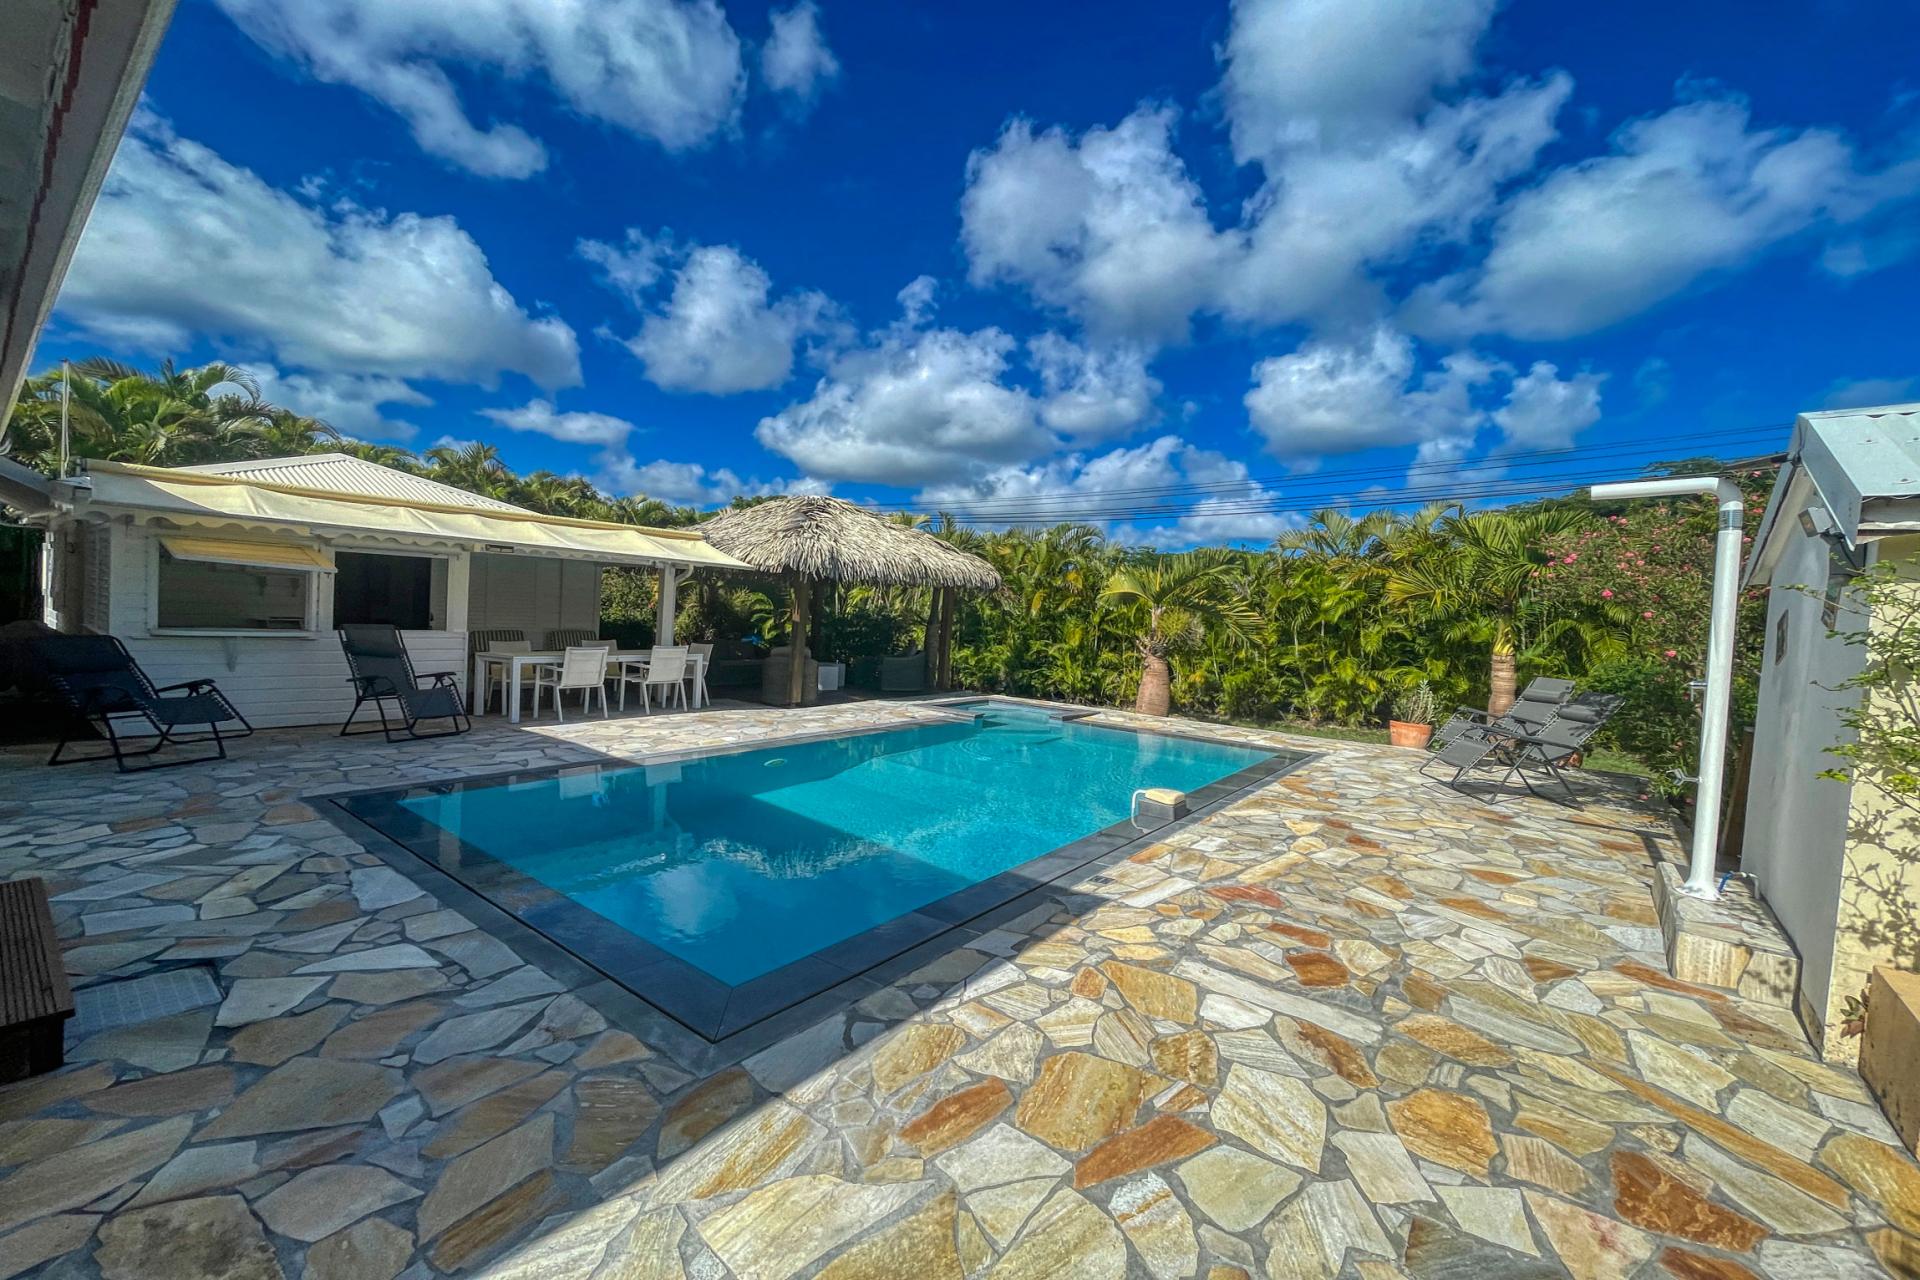 Location villa 4 chambres 11 personnes avec piscine à St François en Guadeloupe - piscine.jpg